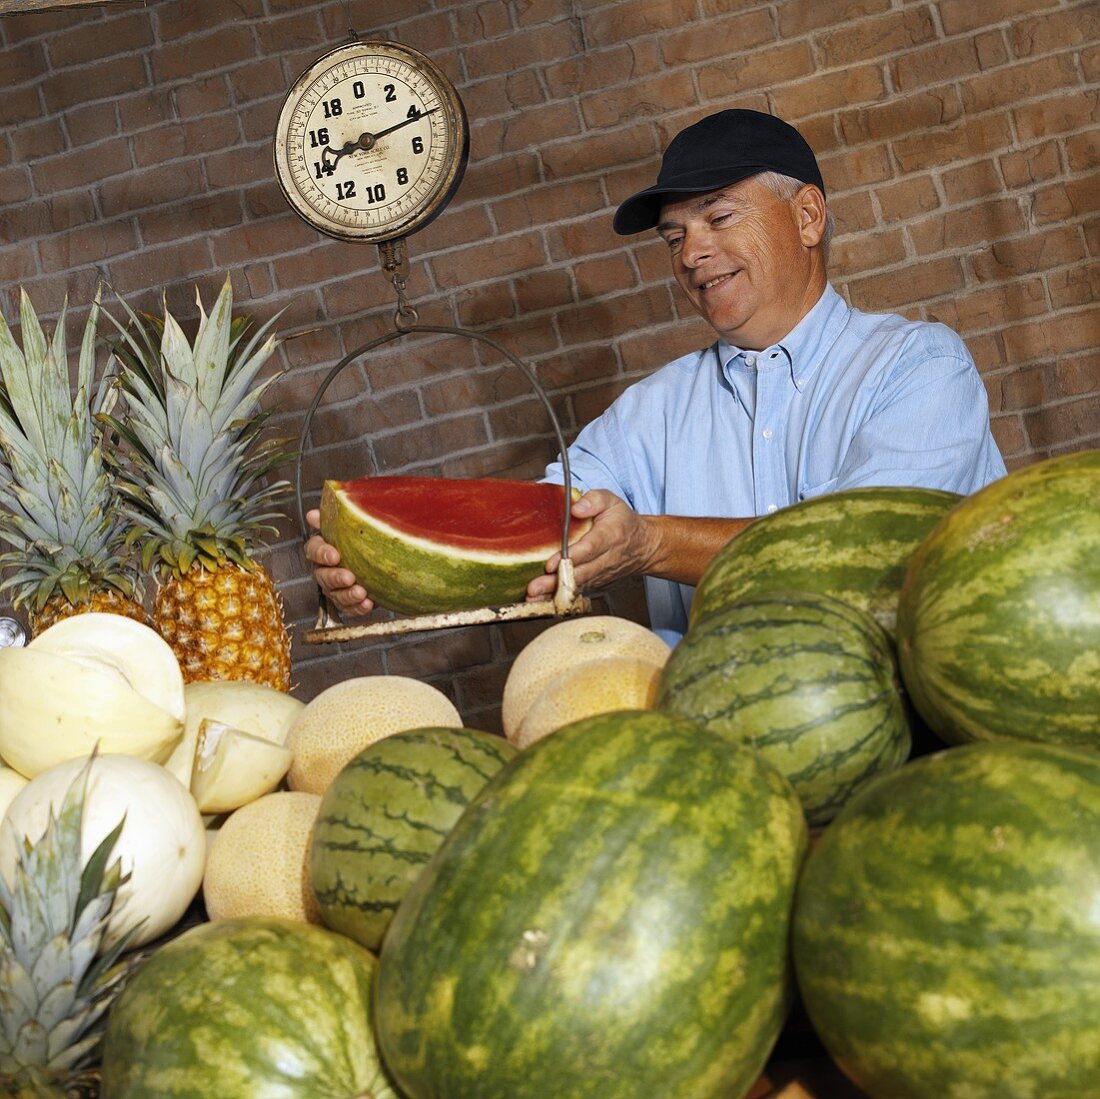 Mann wiegt Wassermelone am Marktstand